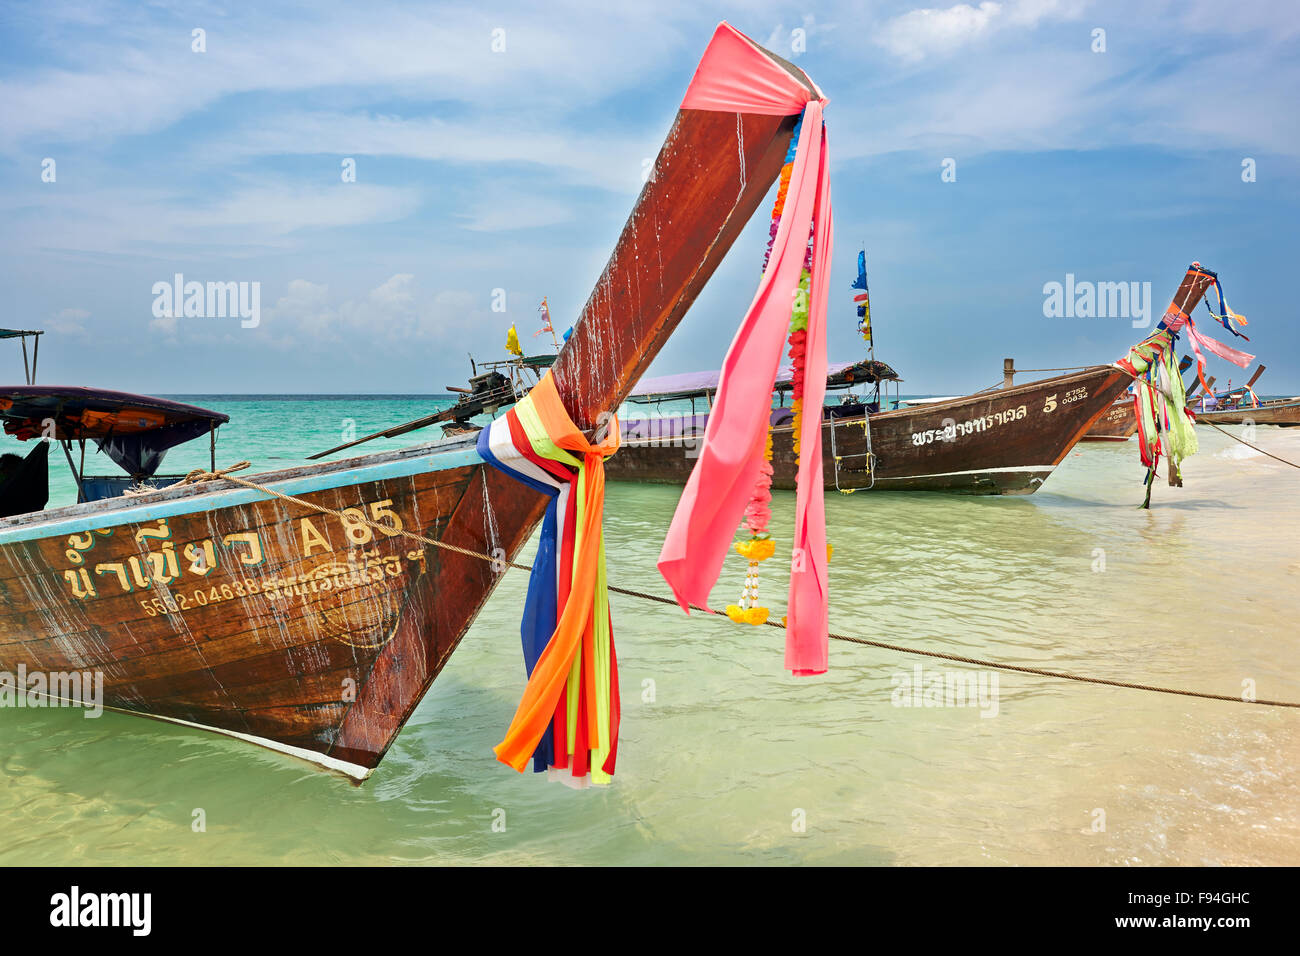 Longtail boats at the beach on Poda Island (Koh Poda). Krabi Province, Thailand. Stock Photo